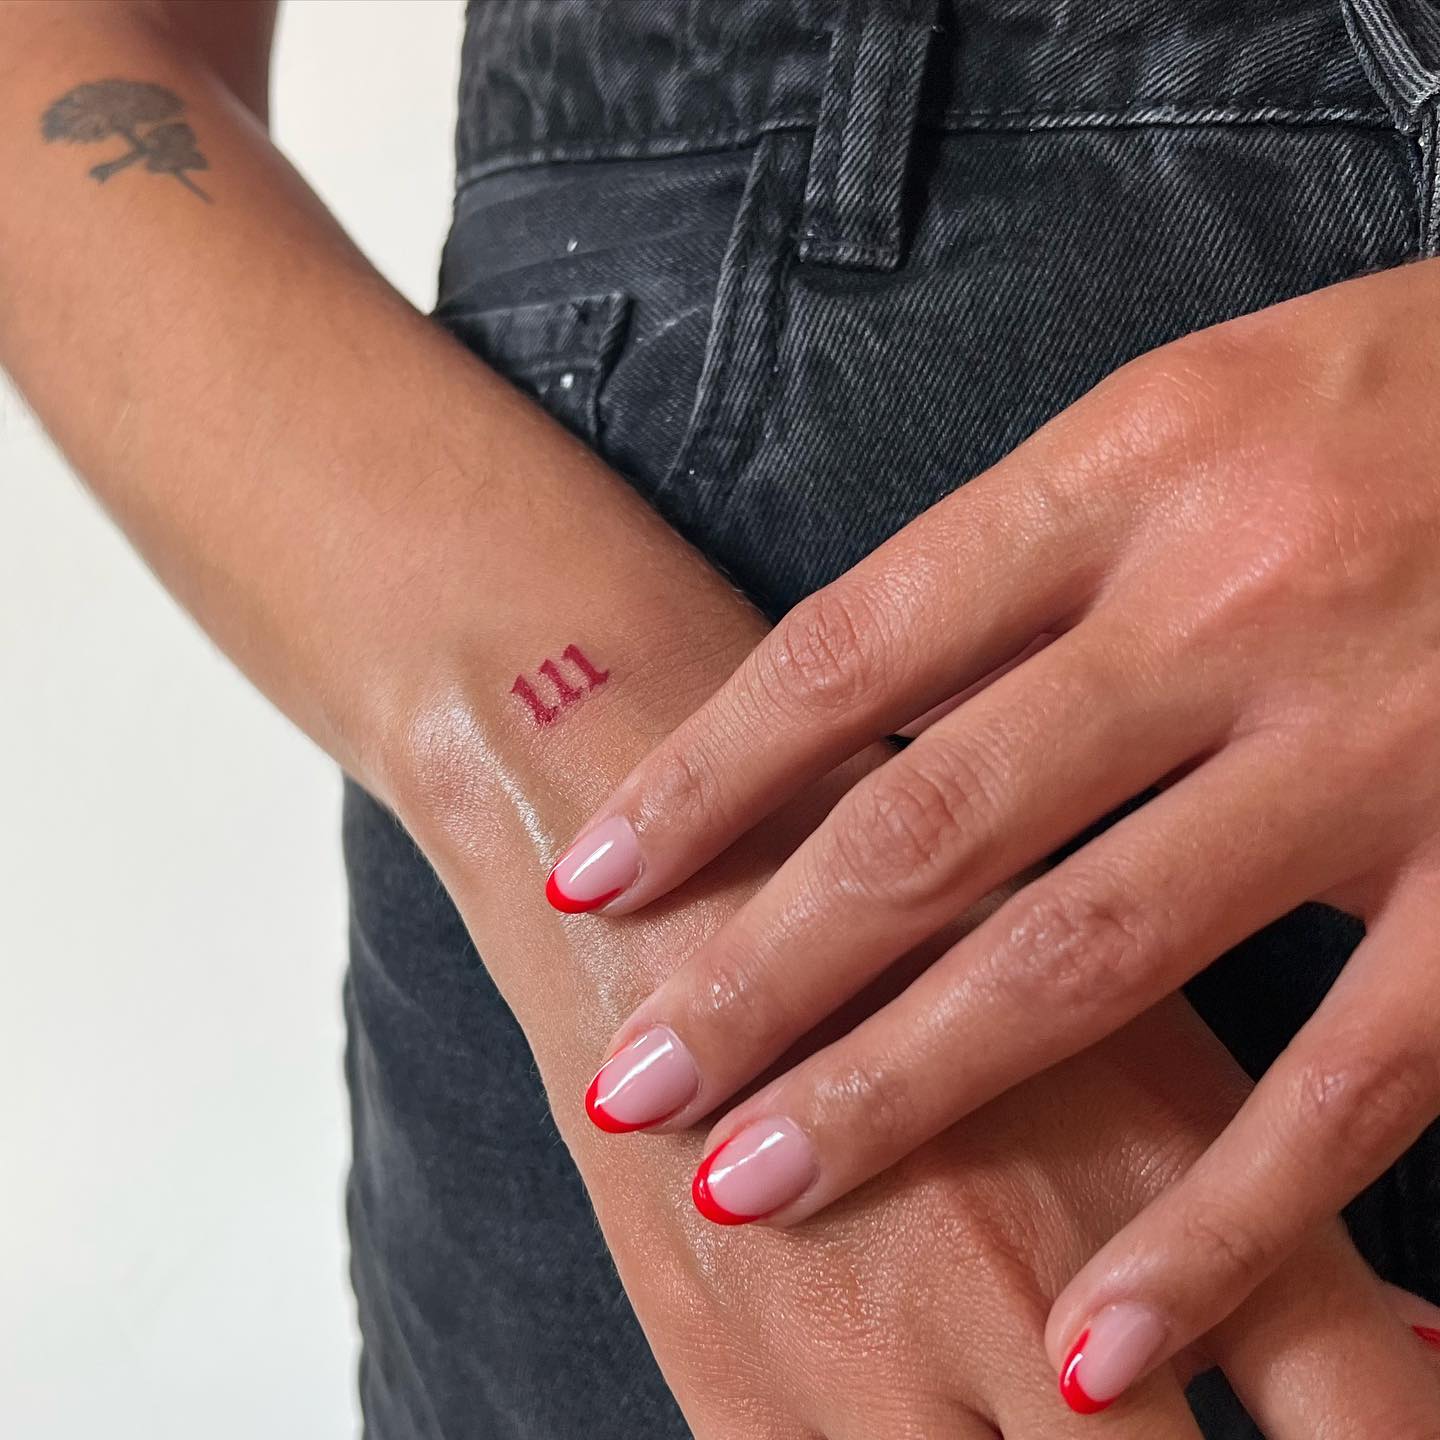 Chicano numbers tattoo design – TattooDesignStock